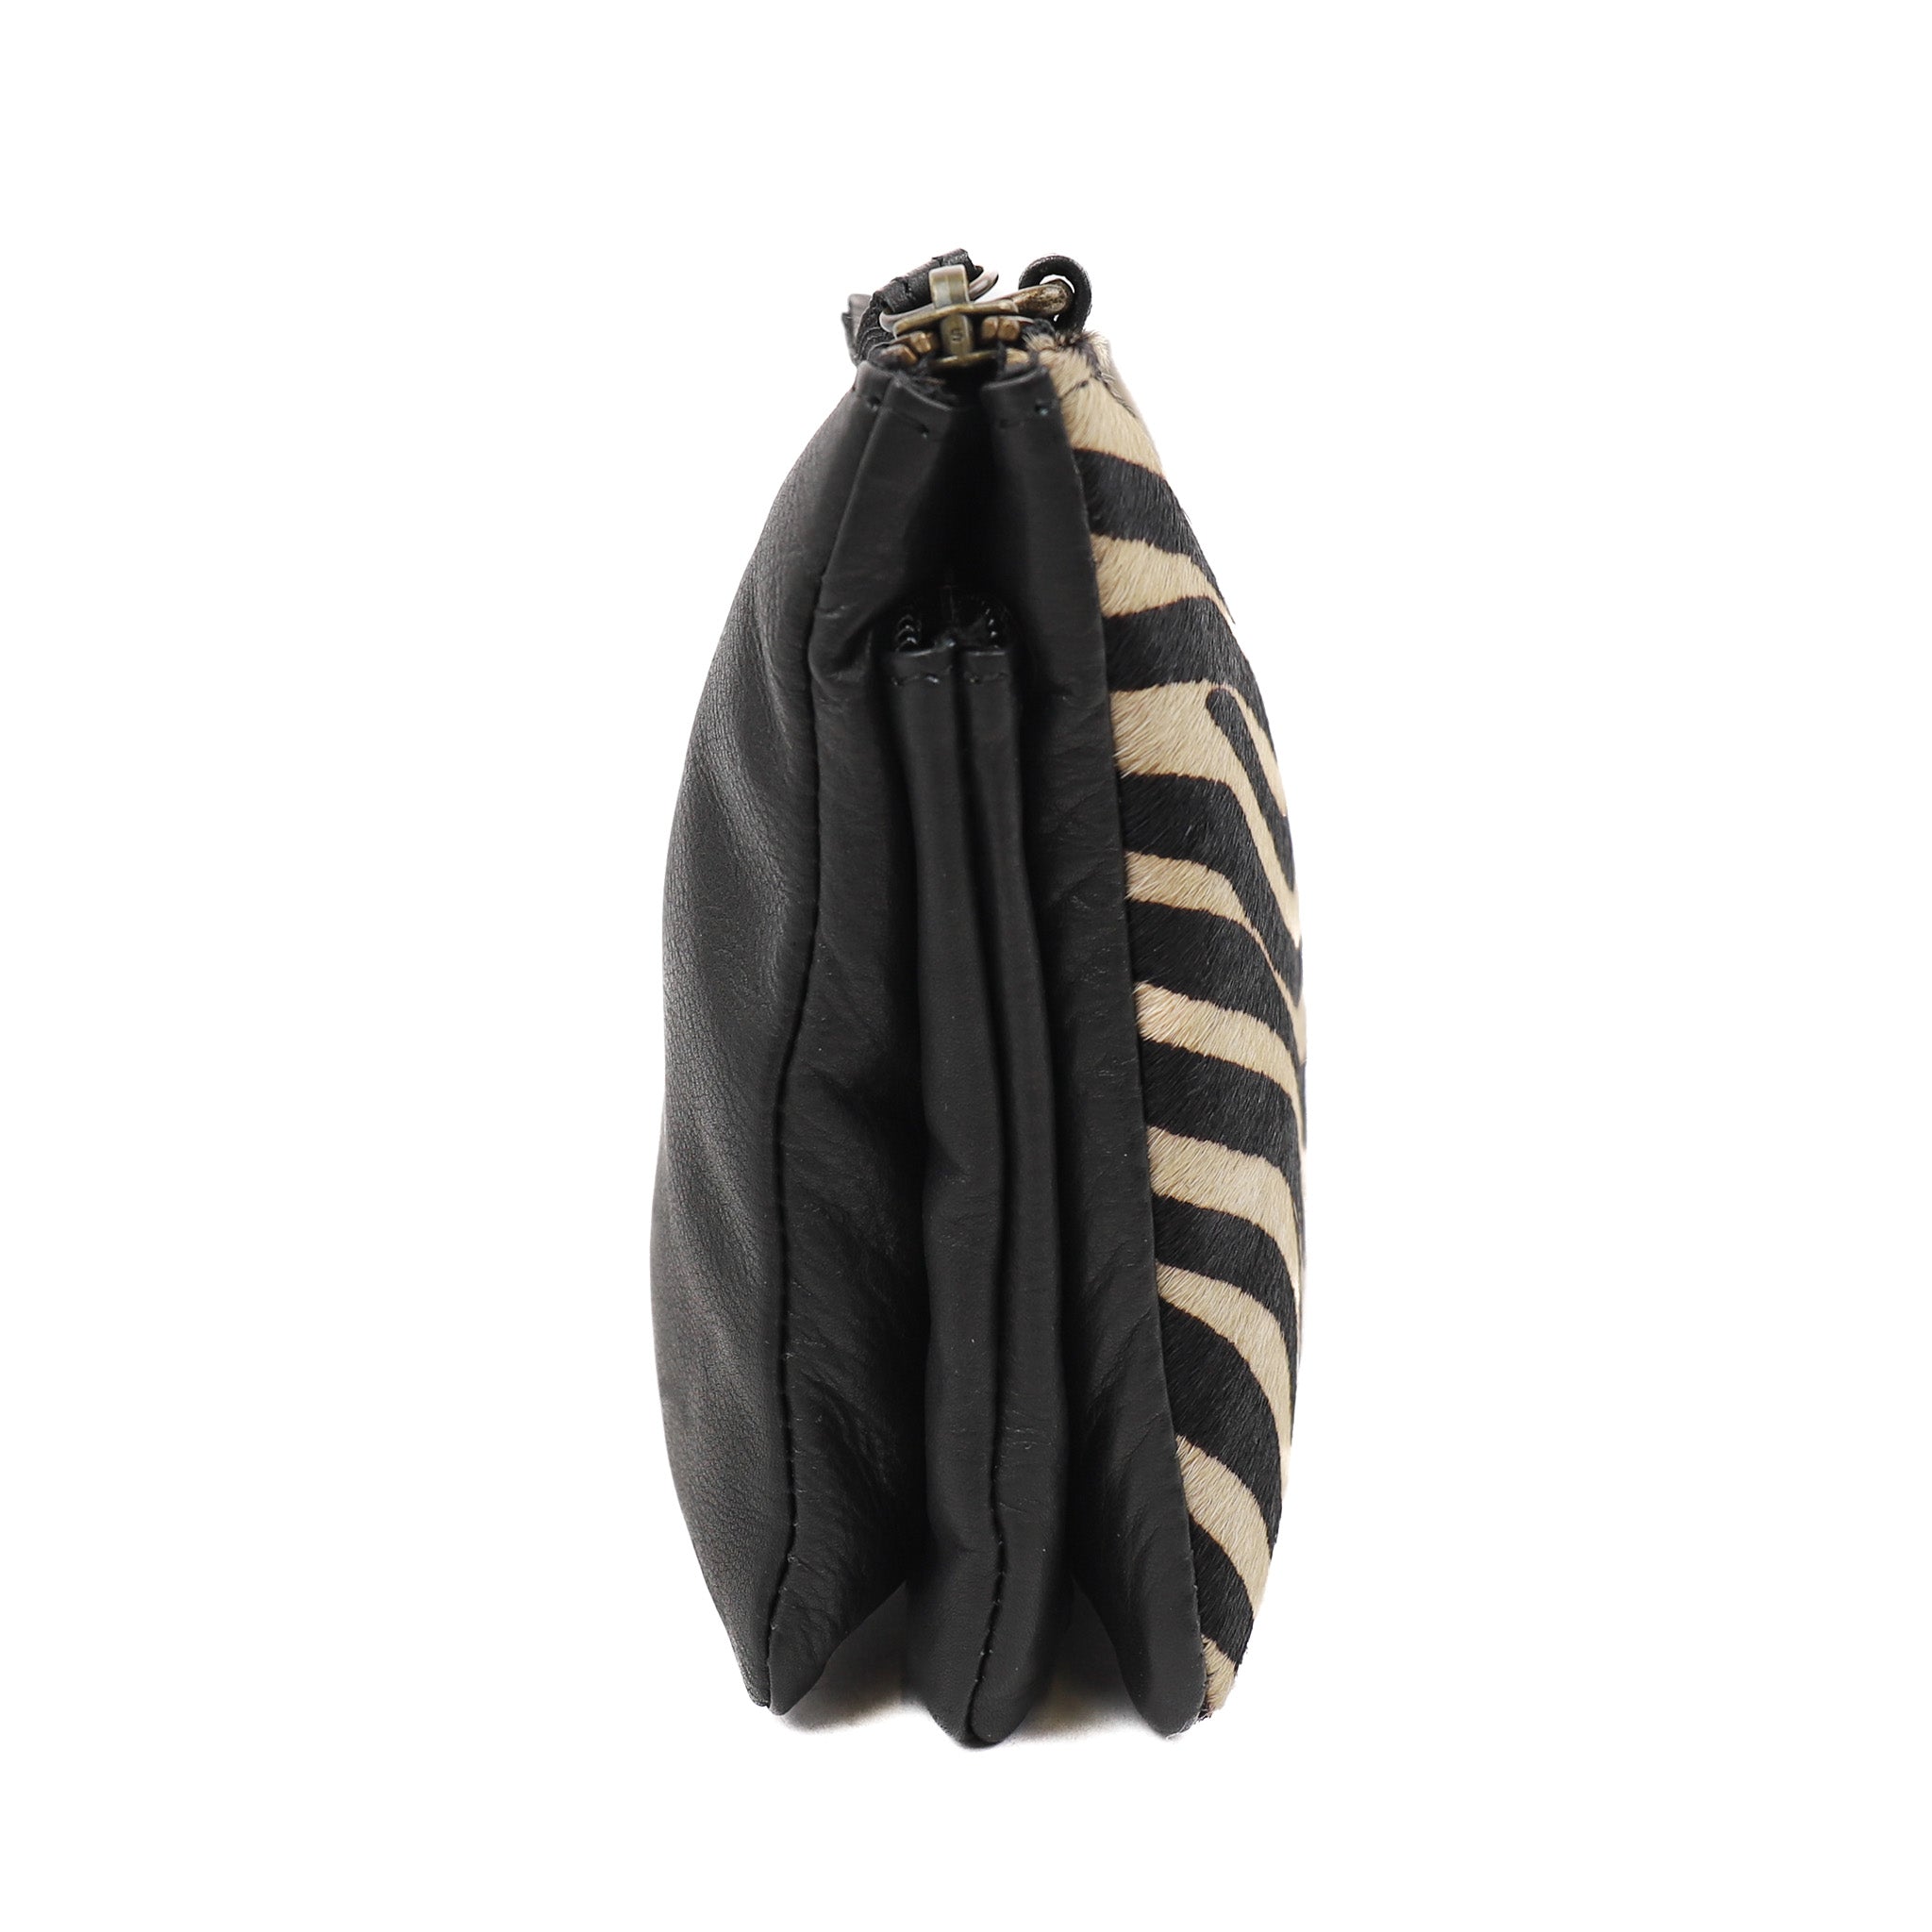 Wallet bag 'Uma' black/zebra